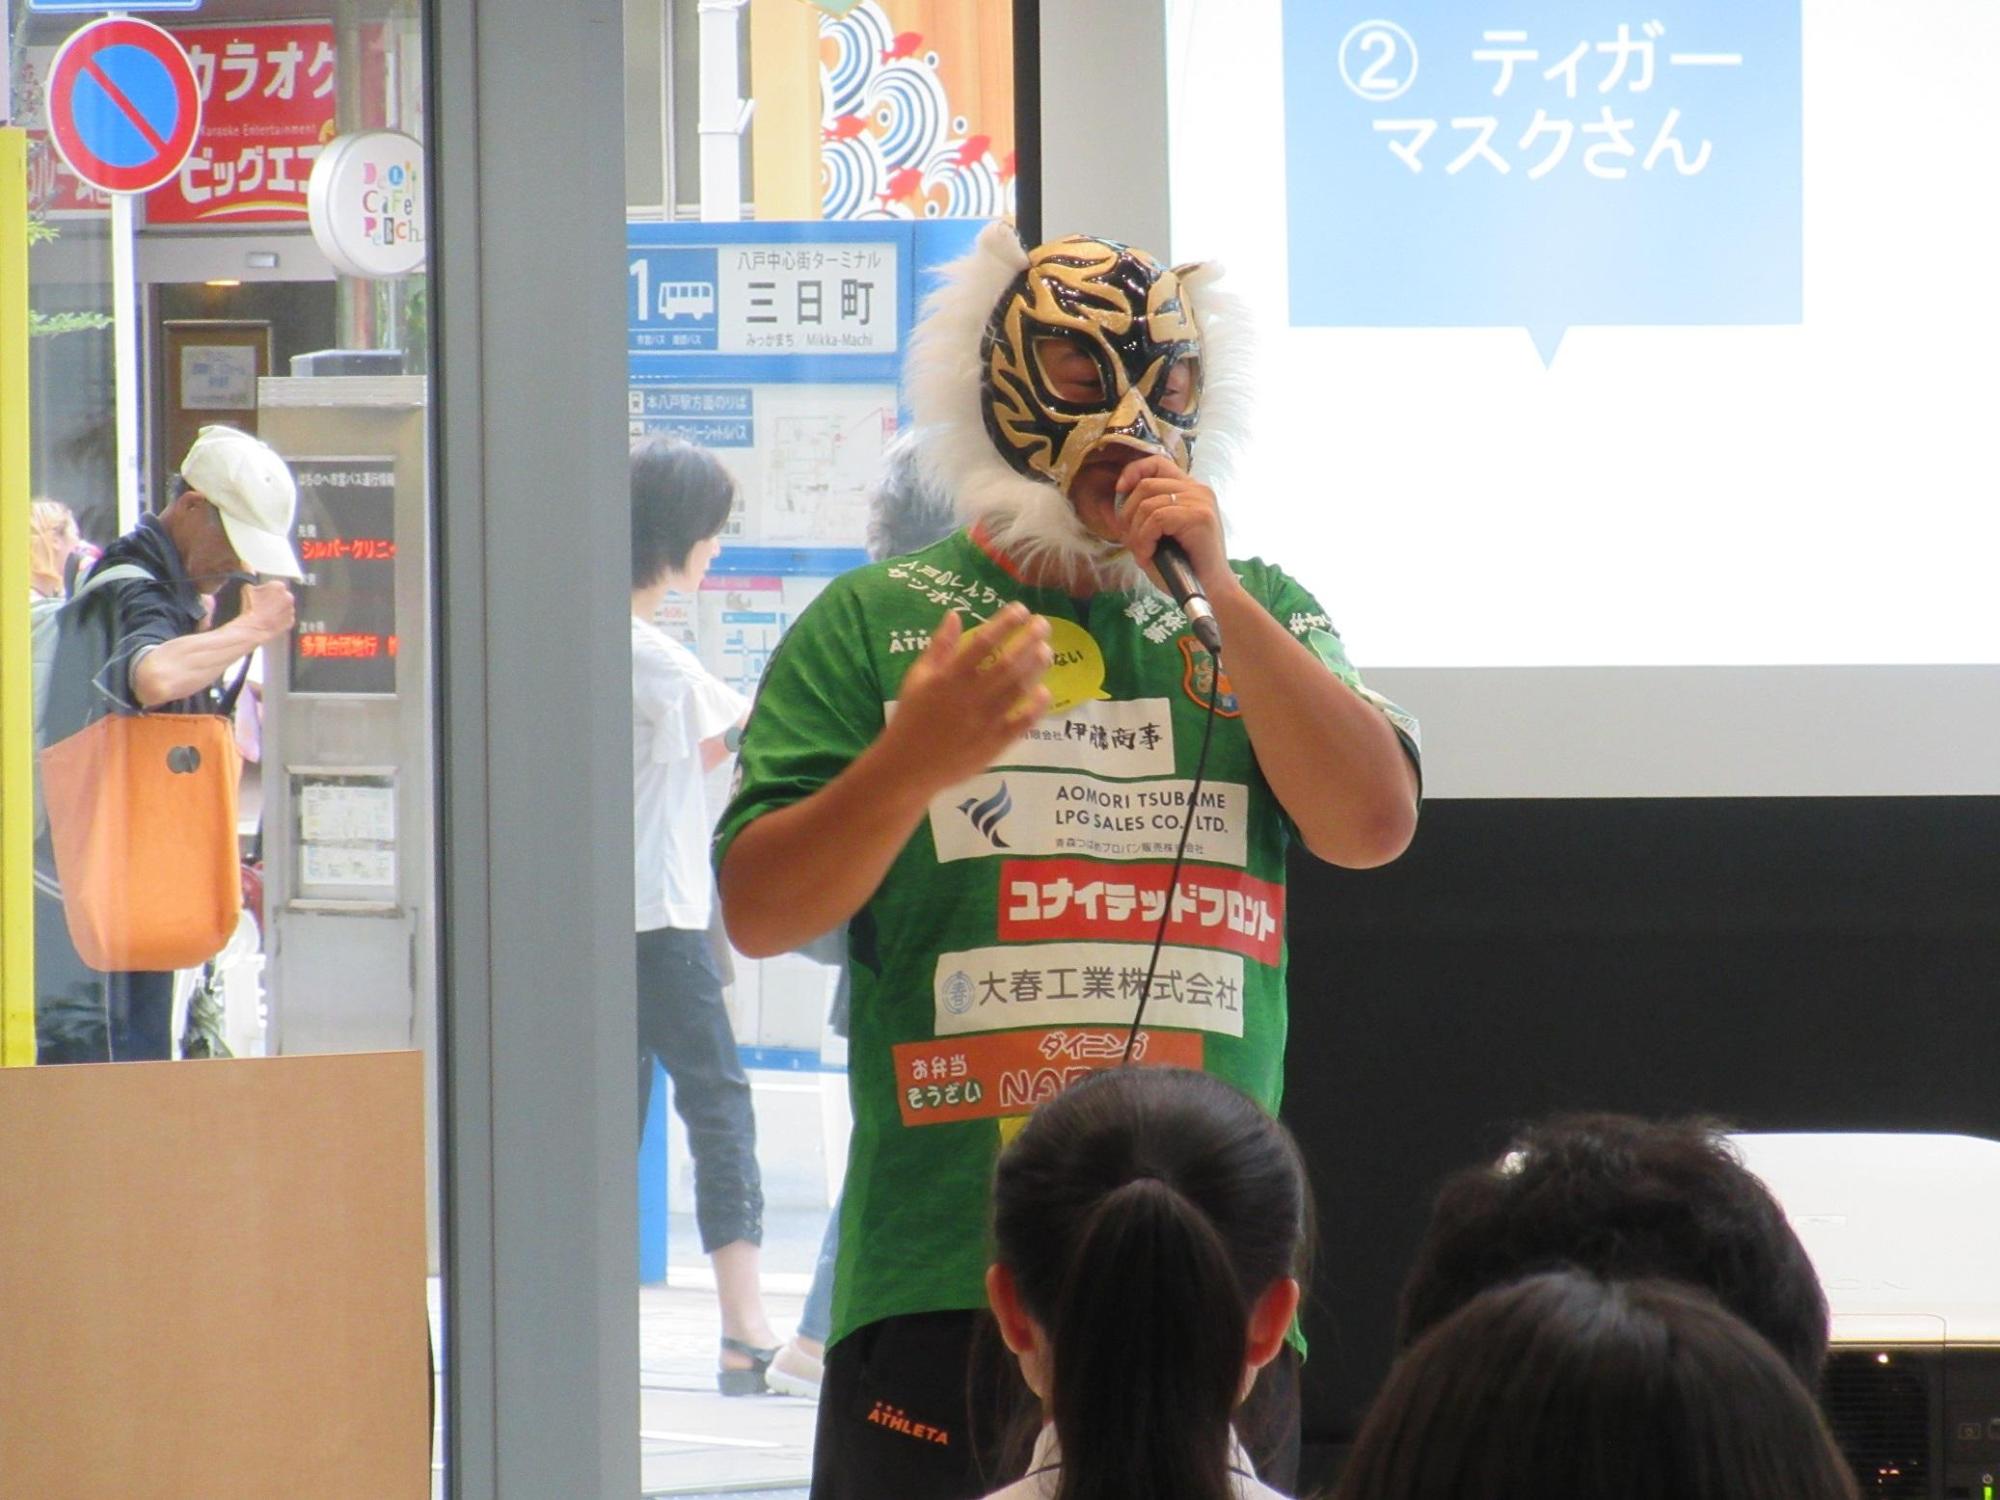 緑の服を着たマスクをかぶった男性がマイクをもって立って話をしている写真